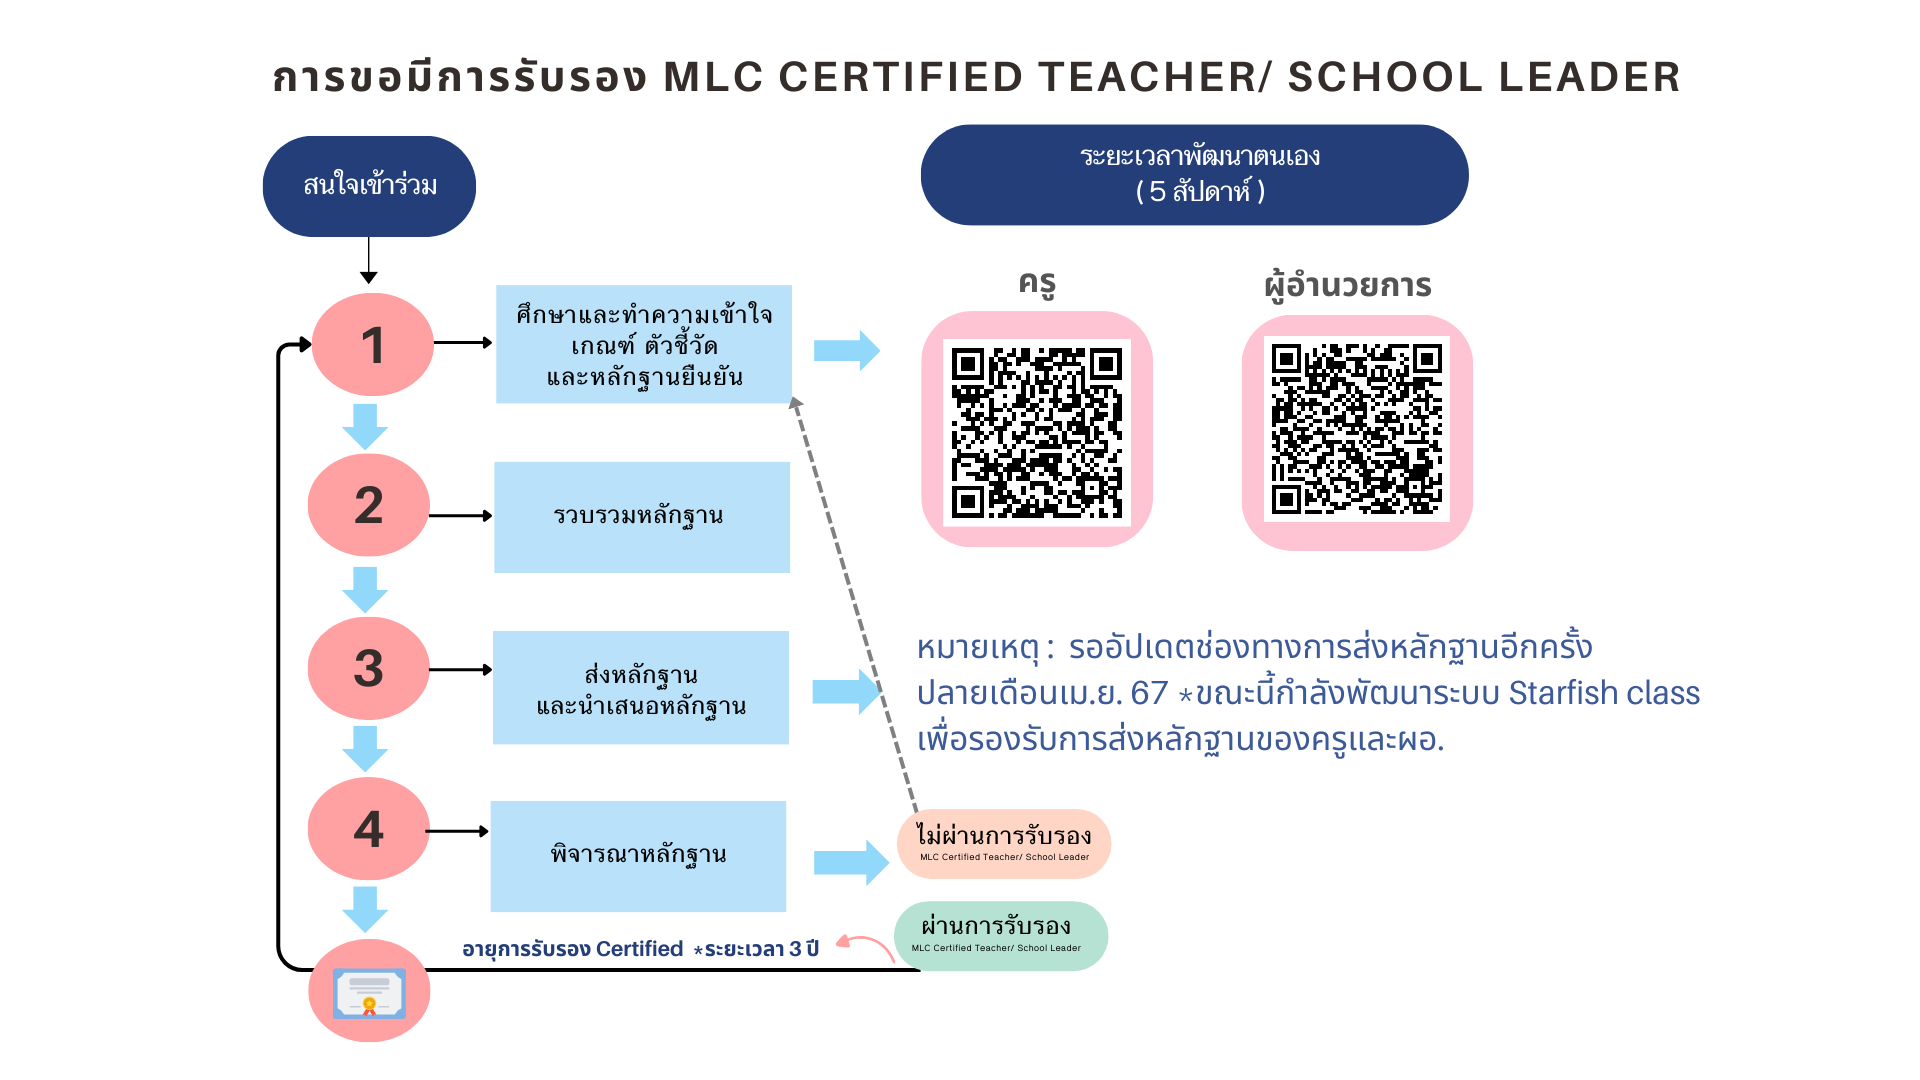 การขอมีการรับรอง MLC Certified Teacher/ School Leader